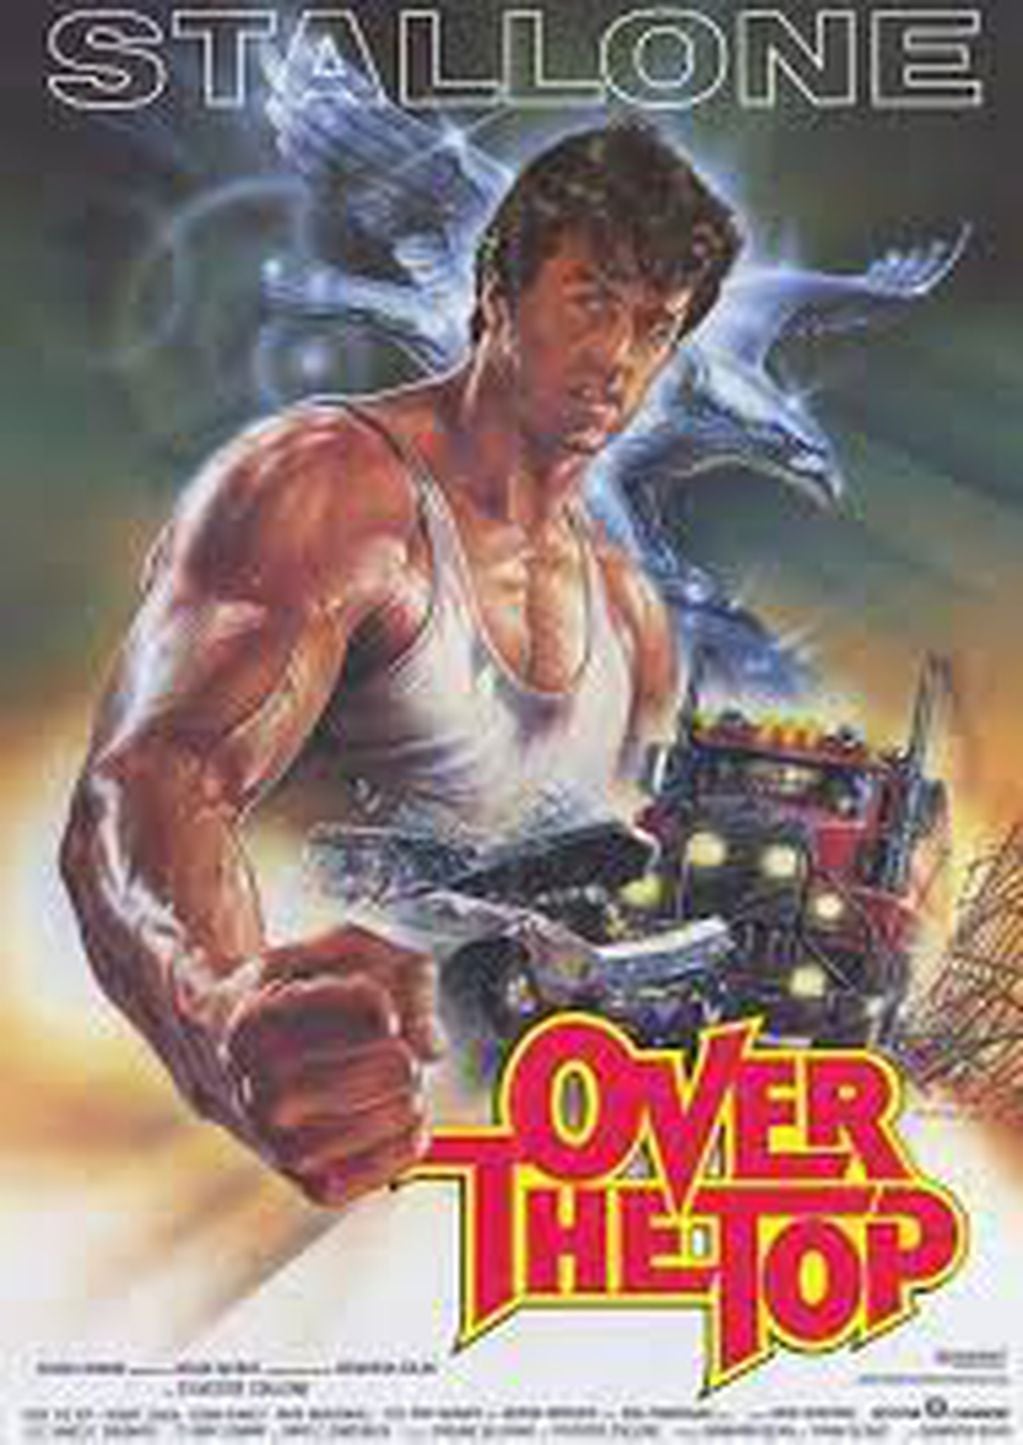 "Over the top", o "Halcón", la película de Stallone que popularizó las competencias de pulseadas. Foto: internet.